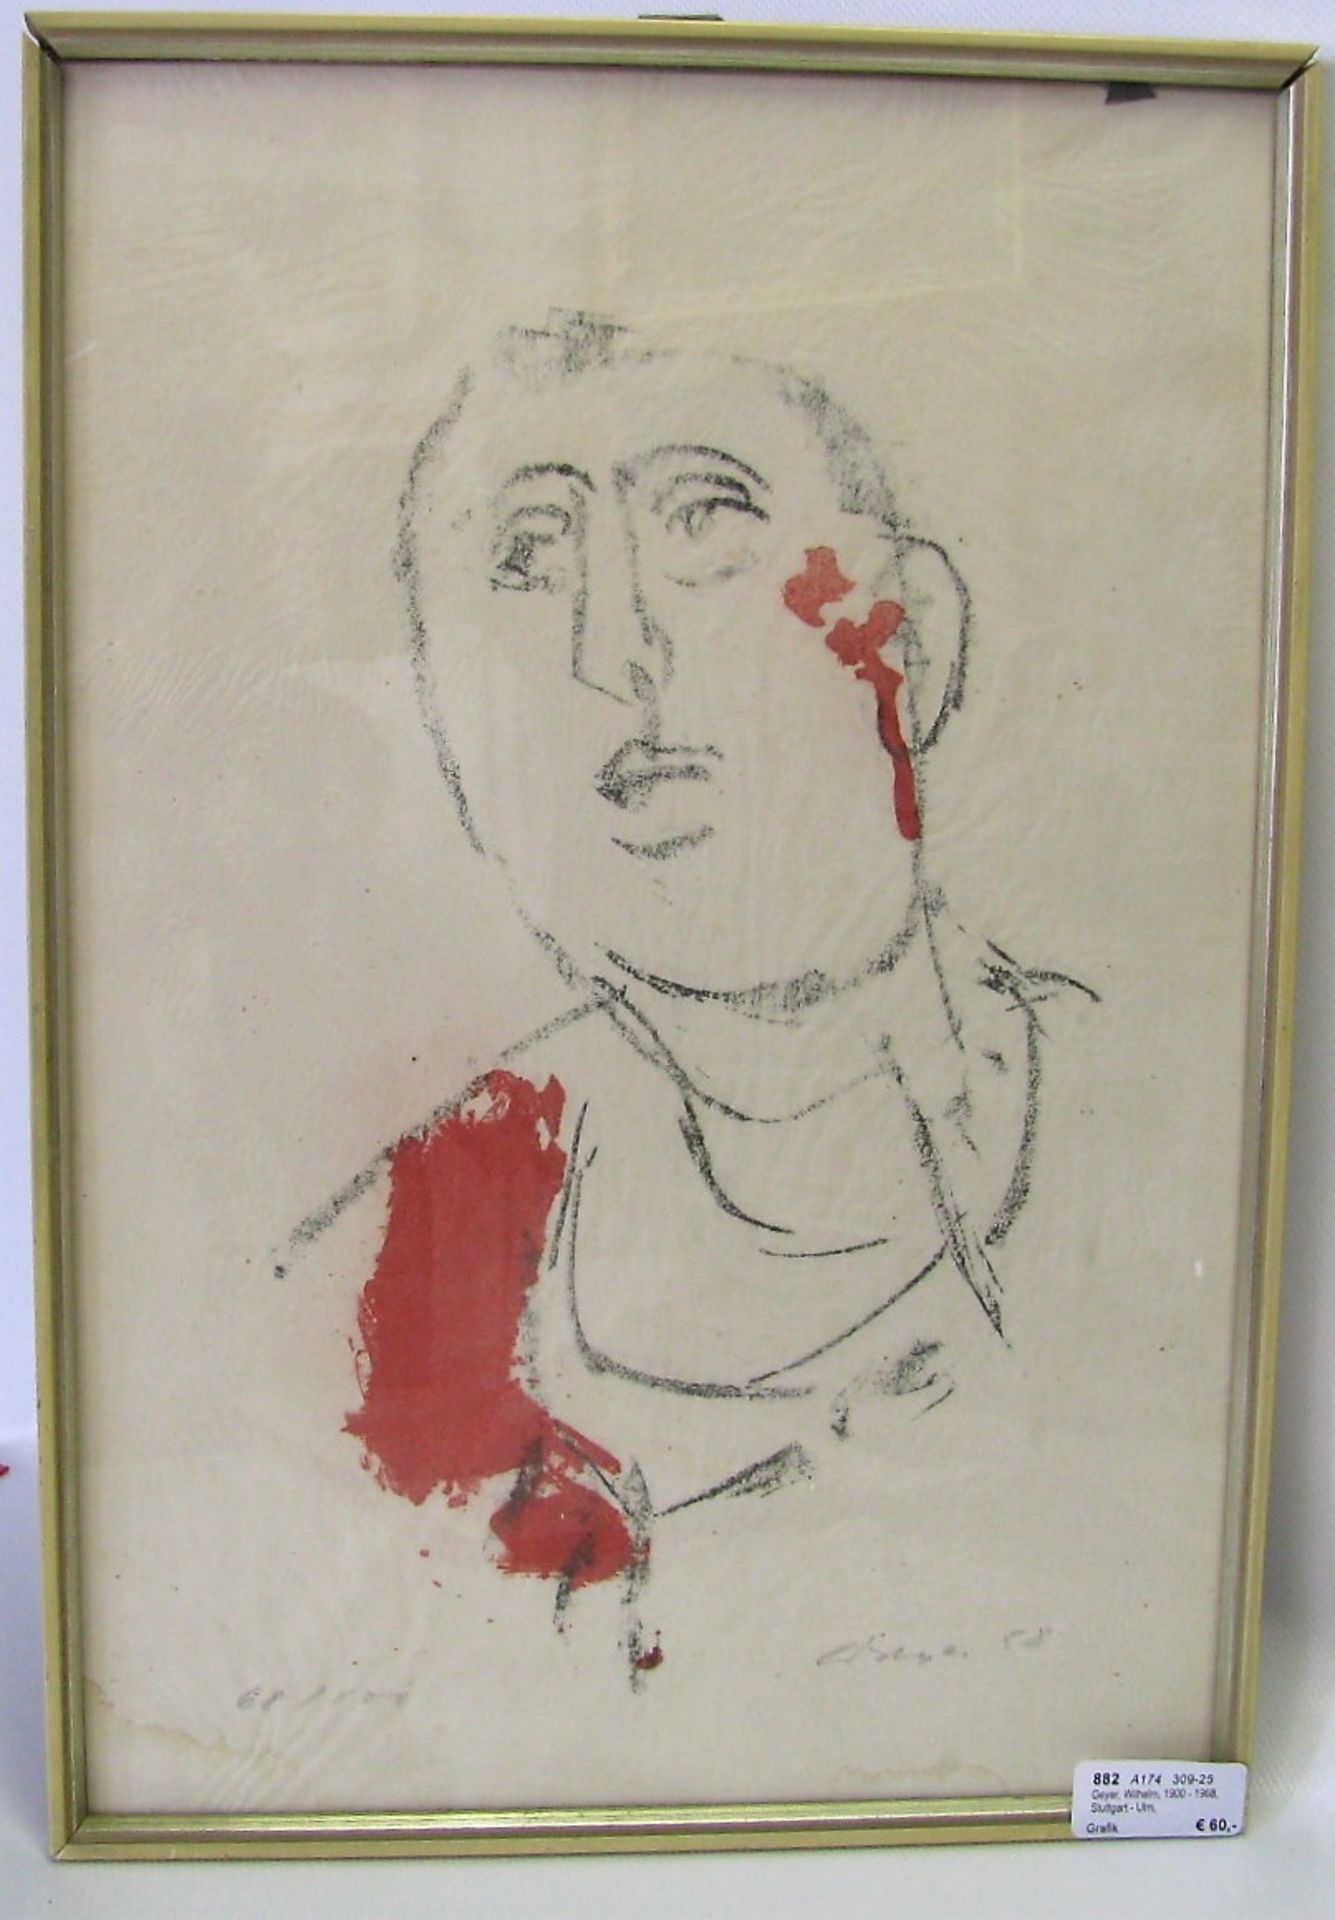 Geyer, Wilhelm, 1900 - 1968, Stuttgart - Ulm, deutscher Maler, Grafiker und Glasmaler, "Porträt",